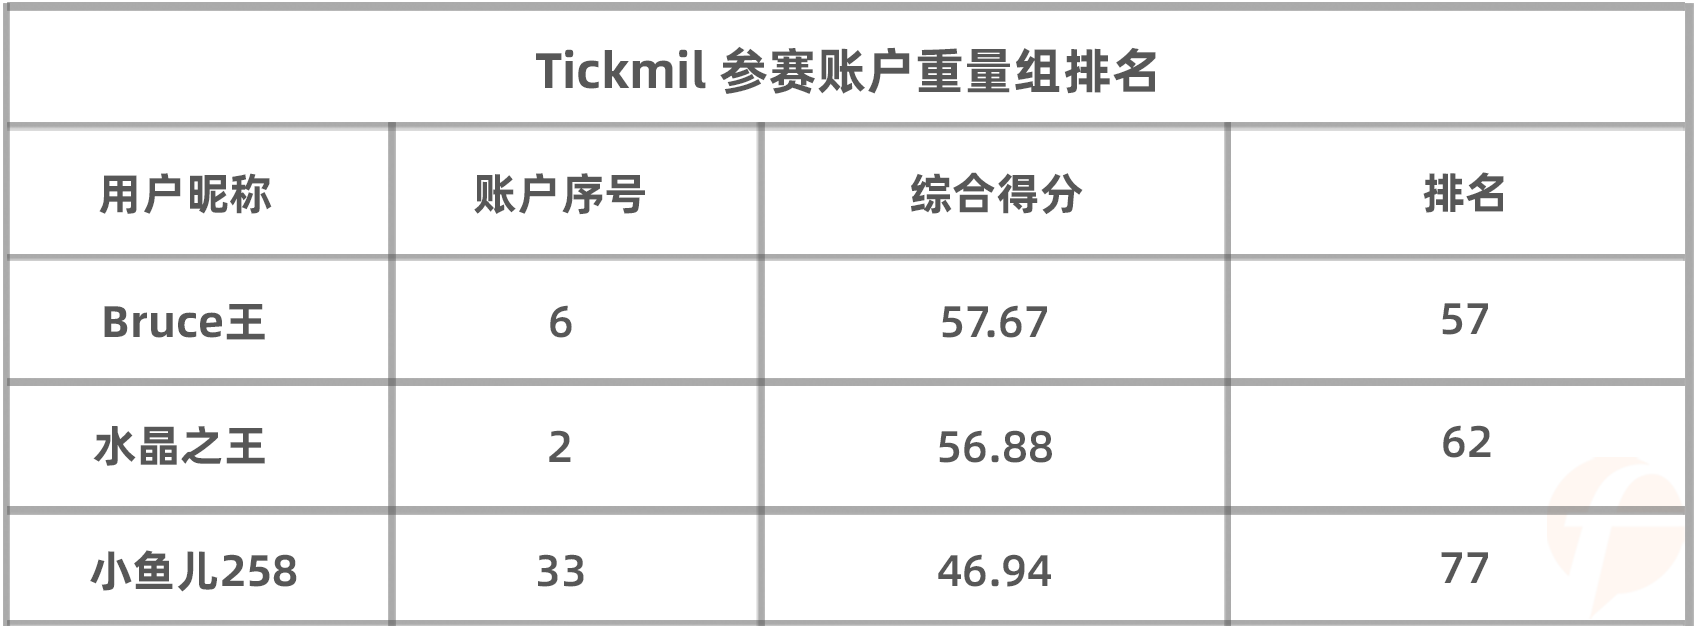 综合得分第一+平仓盈利第一，@逍遥子由 真的稳拿 Tickmill 4月榜冠军了么？